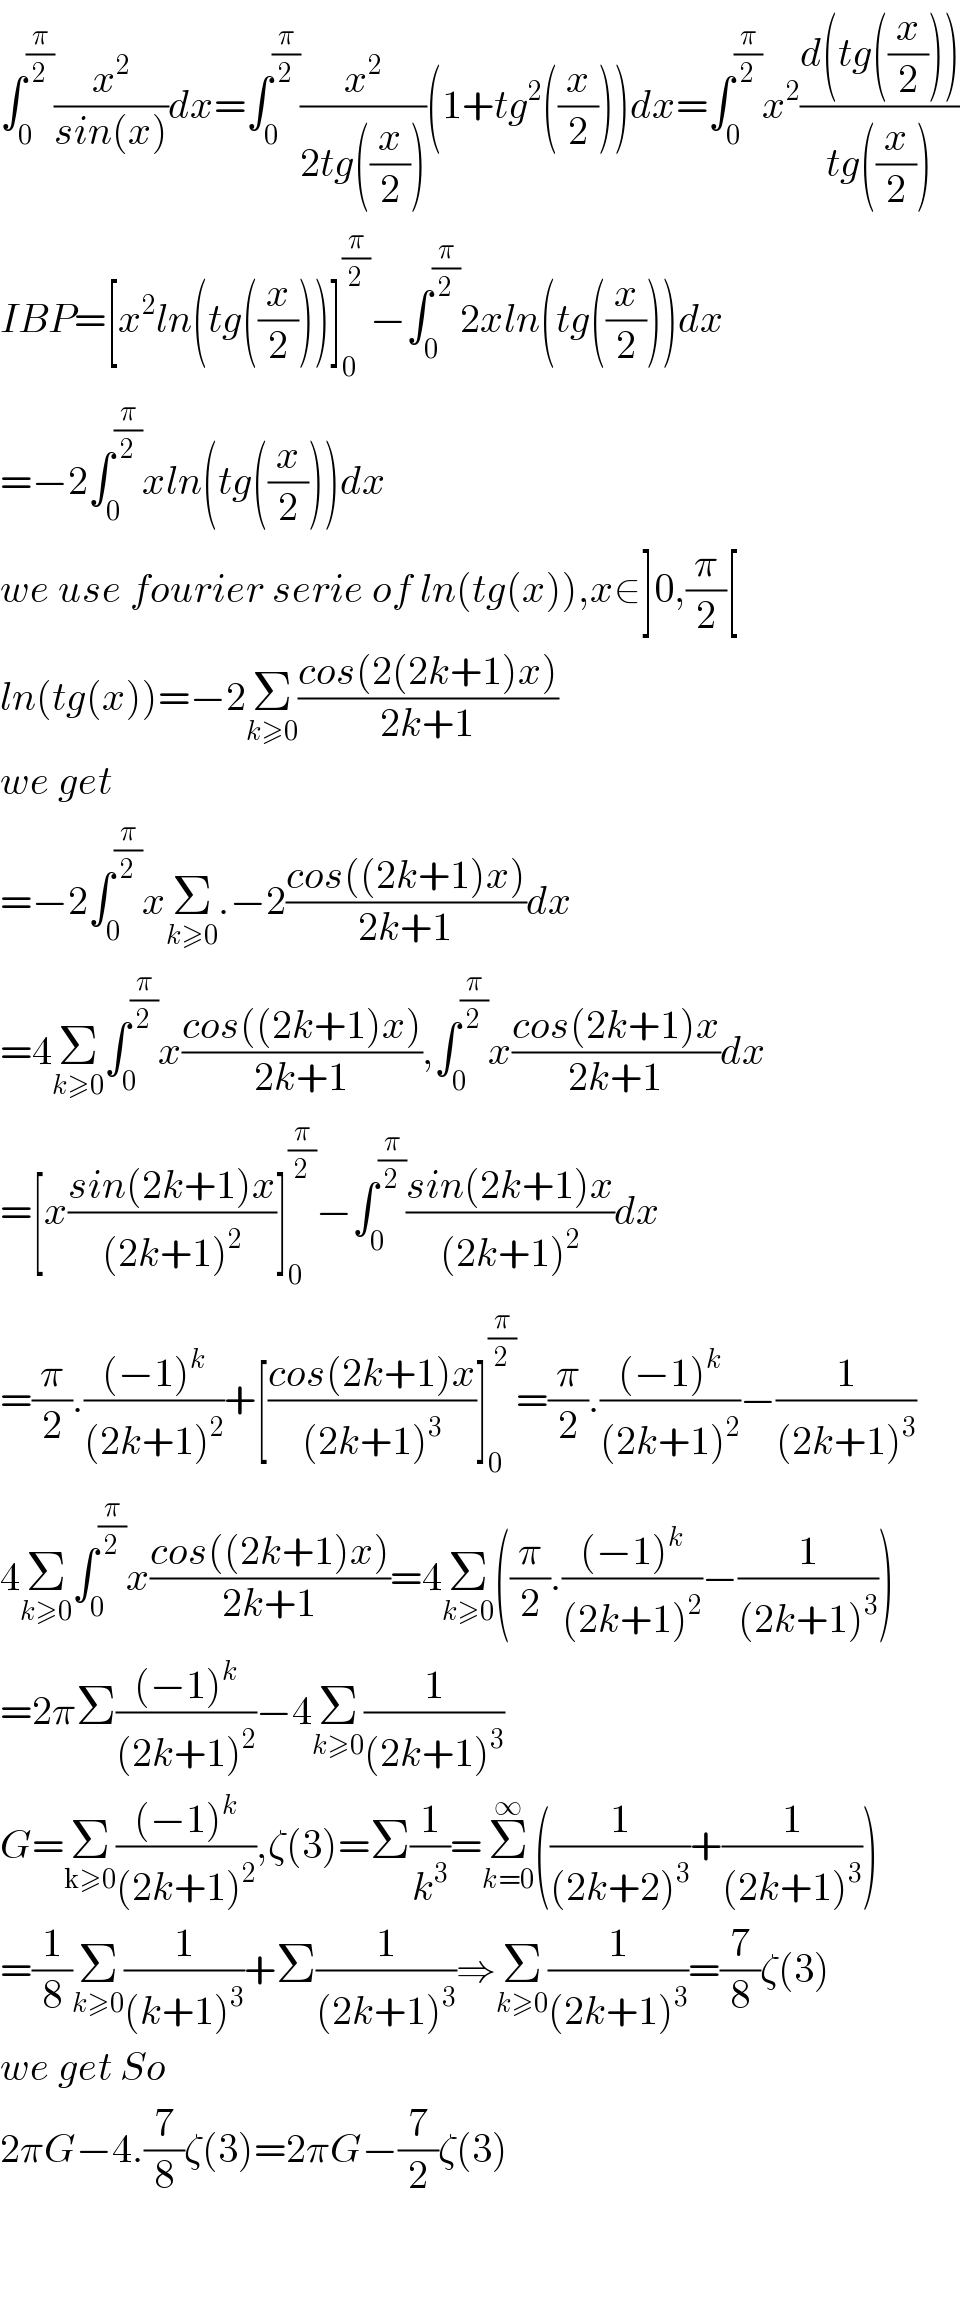 ∫_0 ^(π/2) (x^2 /(sin(x)))dx=∫_0 ^(π/2) (x^2 /(2tg((x/2))))(1+tg^2 ((x/2)))dx=∫_0 ^(π/2) x^2 ((d(tg((x/2))))/(tg((x/2))))  IBP=[x^2 ln(tg((x/2)))]_0 ^(π/2) −∫_0 ^(π/2) 2xln(tg((x/2)))dx  =−2∫_0 ^(π/2) xln(tg((x/2)))dx  we use fourier serie of ln(tg(x)),x∈]0,(π/2)[  ln(tg(x))=−2Σ_(k≥0) ((cos(2(2k+1)x))/(2k+1))  we get  =−2∫_0 ^(π/2) xΣ_(k≥0) .−2((cos((2k+1)x))/(2k+1))dx  =4Σ_(k≥0) ∫_0 ^(π/2) x((cos((2k+1)x))/(2k+1)),∫_0 ^(π/2) x((cos(2k+1)x)/(2k+1))dx  =[x((sin(2k+1)x)/((2k+1)^2 ))]_0 ^(π/2) −∫_0 ^(π/2) ((sin(2k+1)x)/((2k+1)^2 ))dx  =(π/2).(((−1)^k )/((2k+1)^2 ))+[((cos(2k+1)x)/((2k+1)^3 ))]_0 ^(π/2) =(π/2).(((−1)^k )/((2k+1)^2 ))−(1/((2k+1)^3 ))  4Σ_(k≥0) ∫_0 ^(π/2) x((cos((2k+1)x))/(2k+1))=4Σ_(k≥0) ((π/2).(((−1)^k )/((2k+1)^2 ))−(1/((2k+1)^3 )))  =2πΣ(((−1)^k )/((2k+1)^2 ))−4Σ_(k≥0) (1/((2k+1)^3 ))  G=Σ_(k≥0) (((−1)^k )/((2k+1)^2 )),ζ(3)=Σ(1/k^3 )=Σ_(k=0) ^∞ ((1/((2k+2)^3 ))+(1/((2k+1)^3 )))  =(1/8)Σ_(k≥0) (1/((k+1)^3 ))+Σ(1/((2k+1)^3 ))⇒Σ_(k≥0) (1/((2k+1)^3 ))=(7/8)ζ(3)  we get So  2πG−4.(7/8)ζ(3)=2πG−(7/2)ζ(3)      